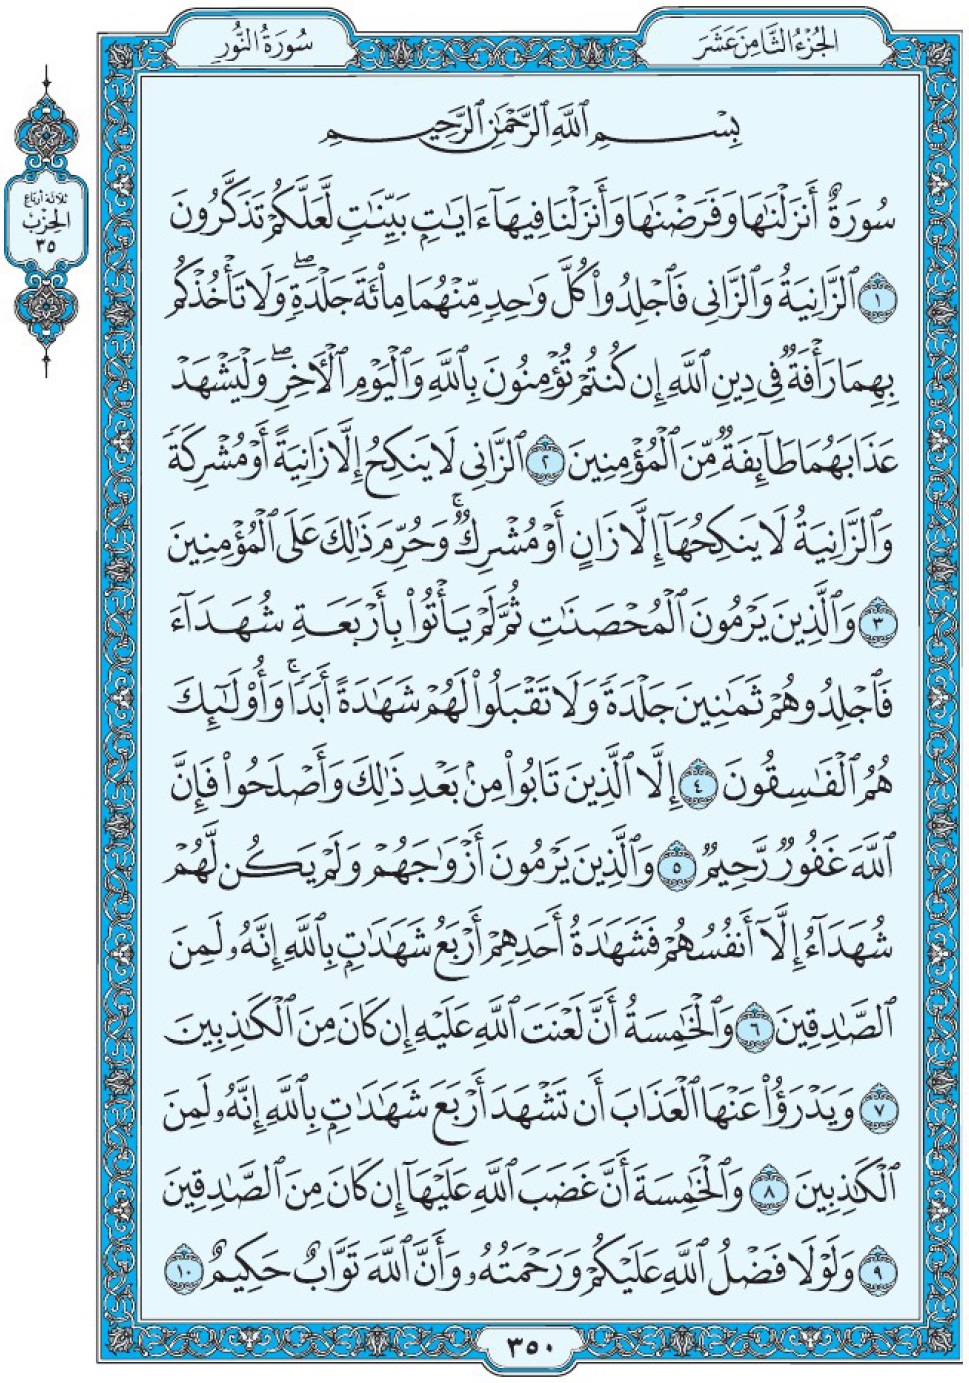 Коран Мединский мусхаф страница 350, сура 24 Ан-Нур سورة ٢٤ النور 